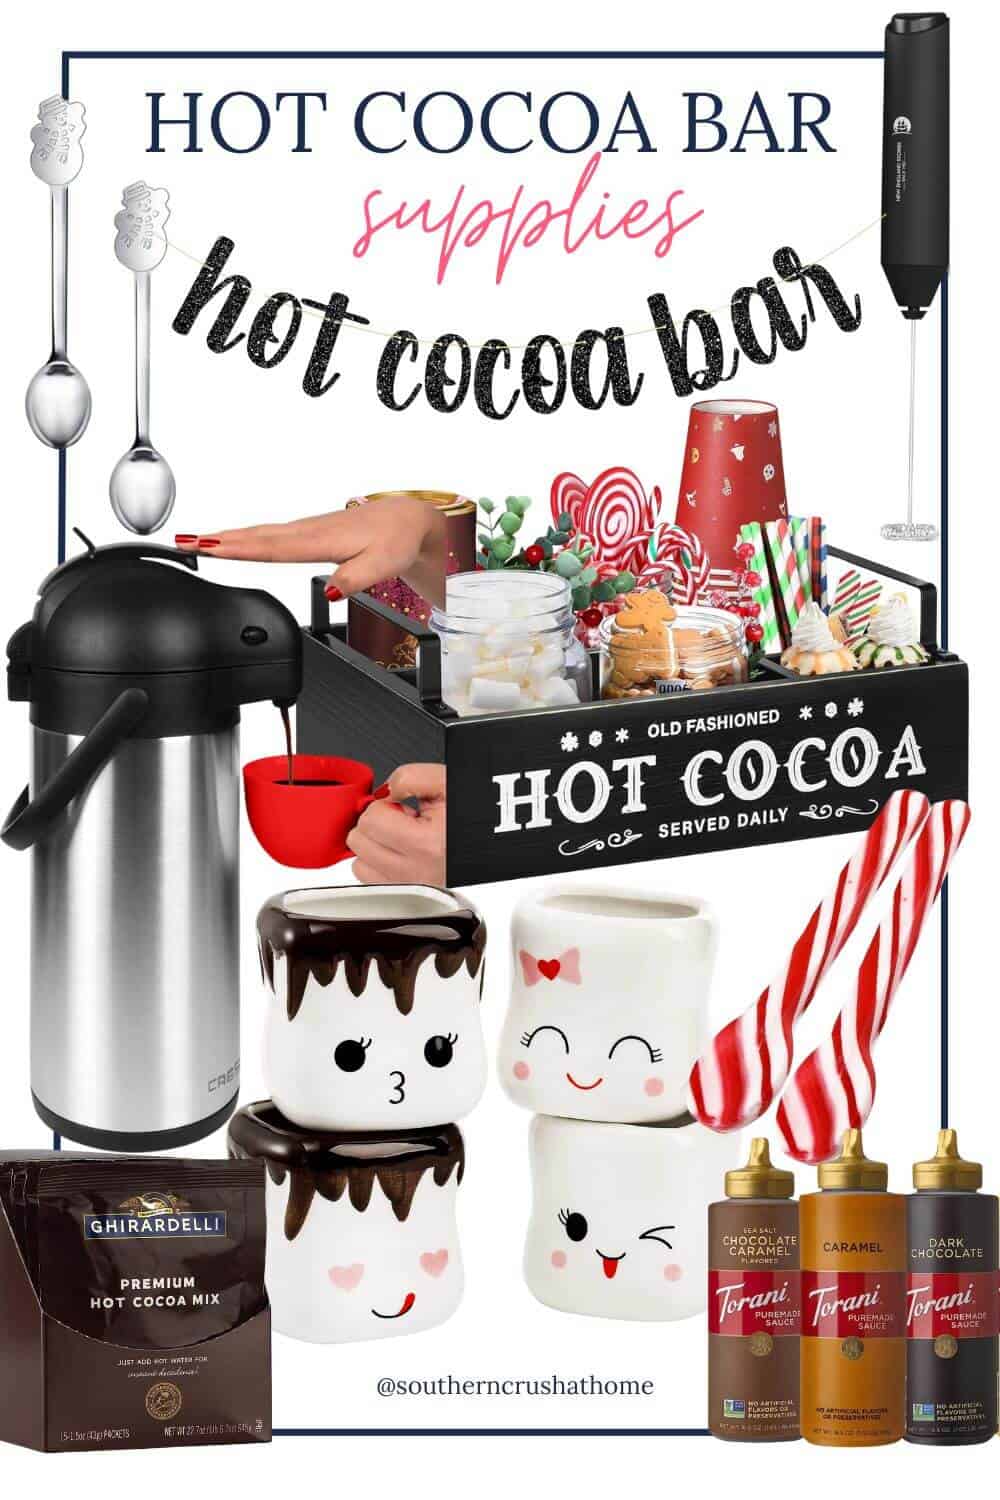 Hot Cocoa Bar Supplies